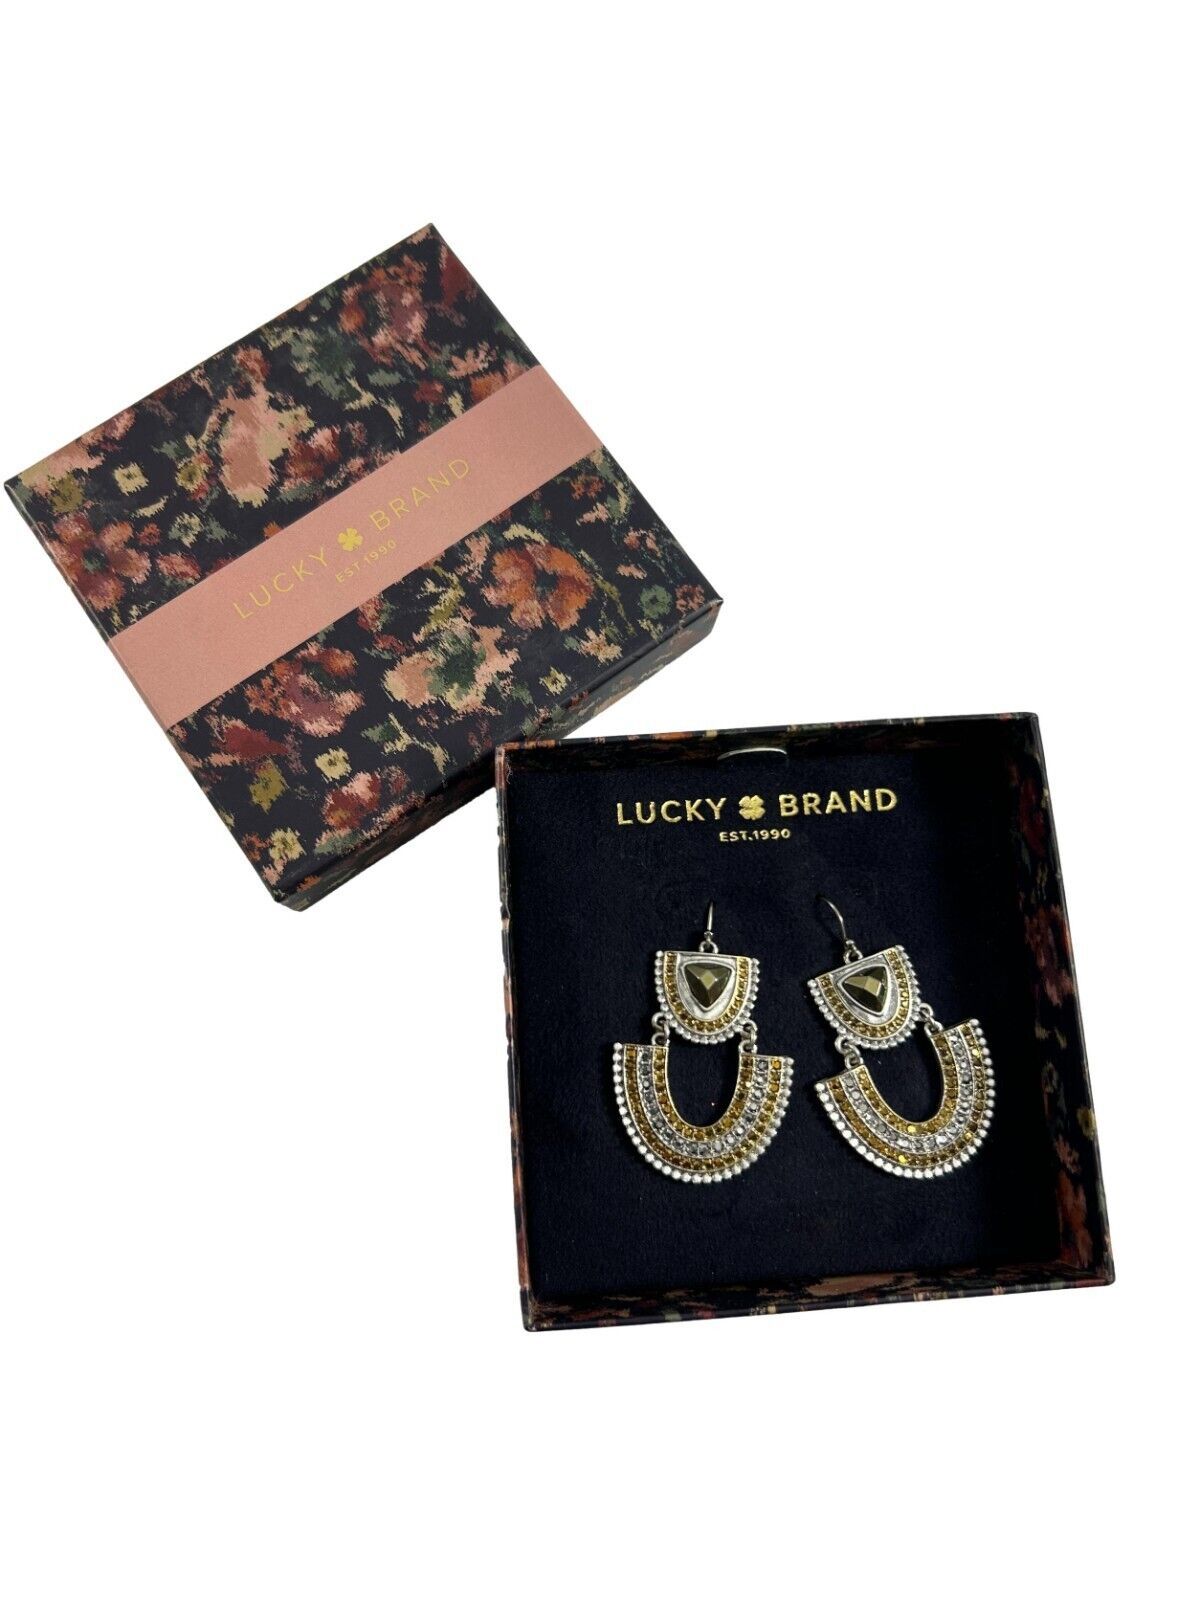 Lucky Brand Dangle Earrings Drop Statement Silver Tone Ornate Fan Shape 2 Tier  - $24.75